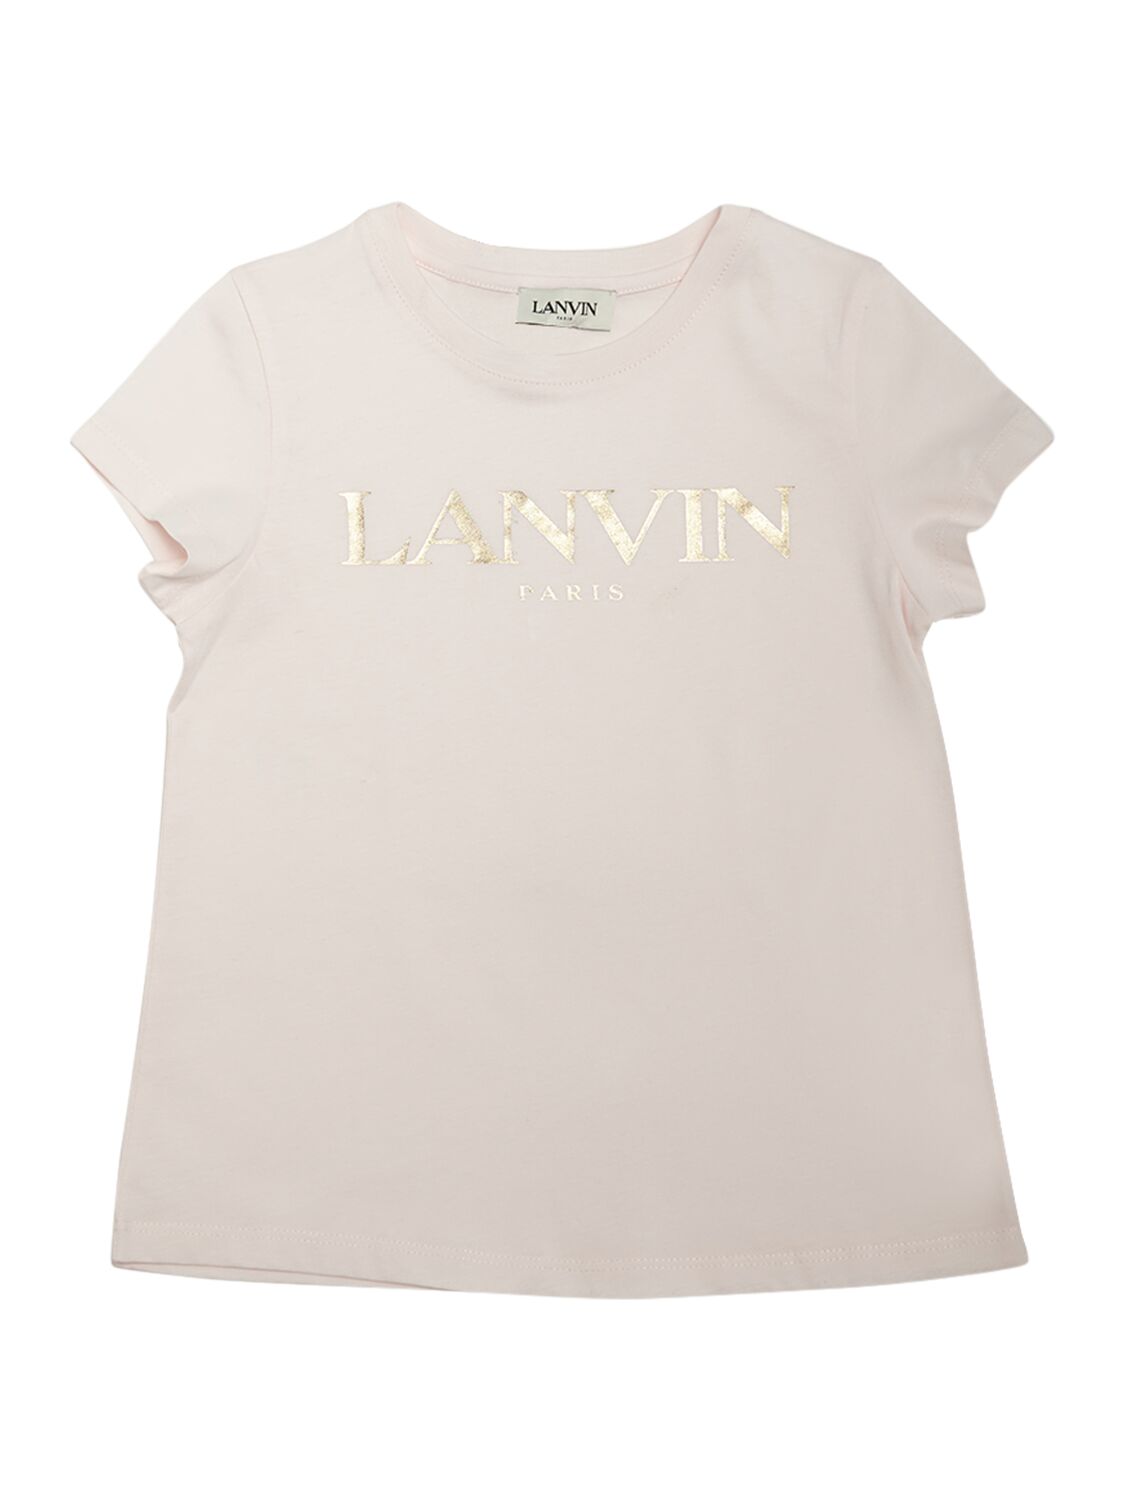 Lanvin Kids' Logo Print Cotton Jersey T-shirt In Pink